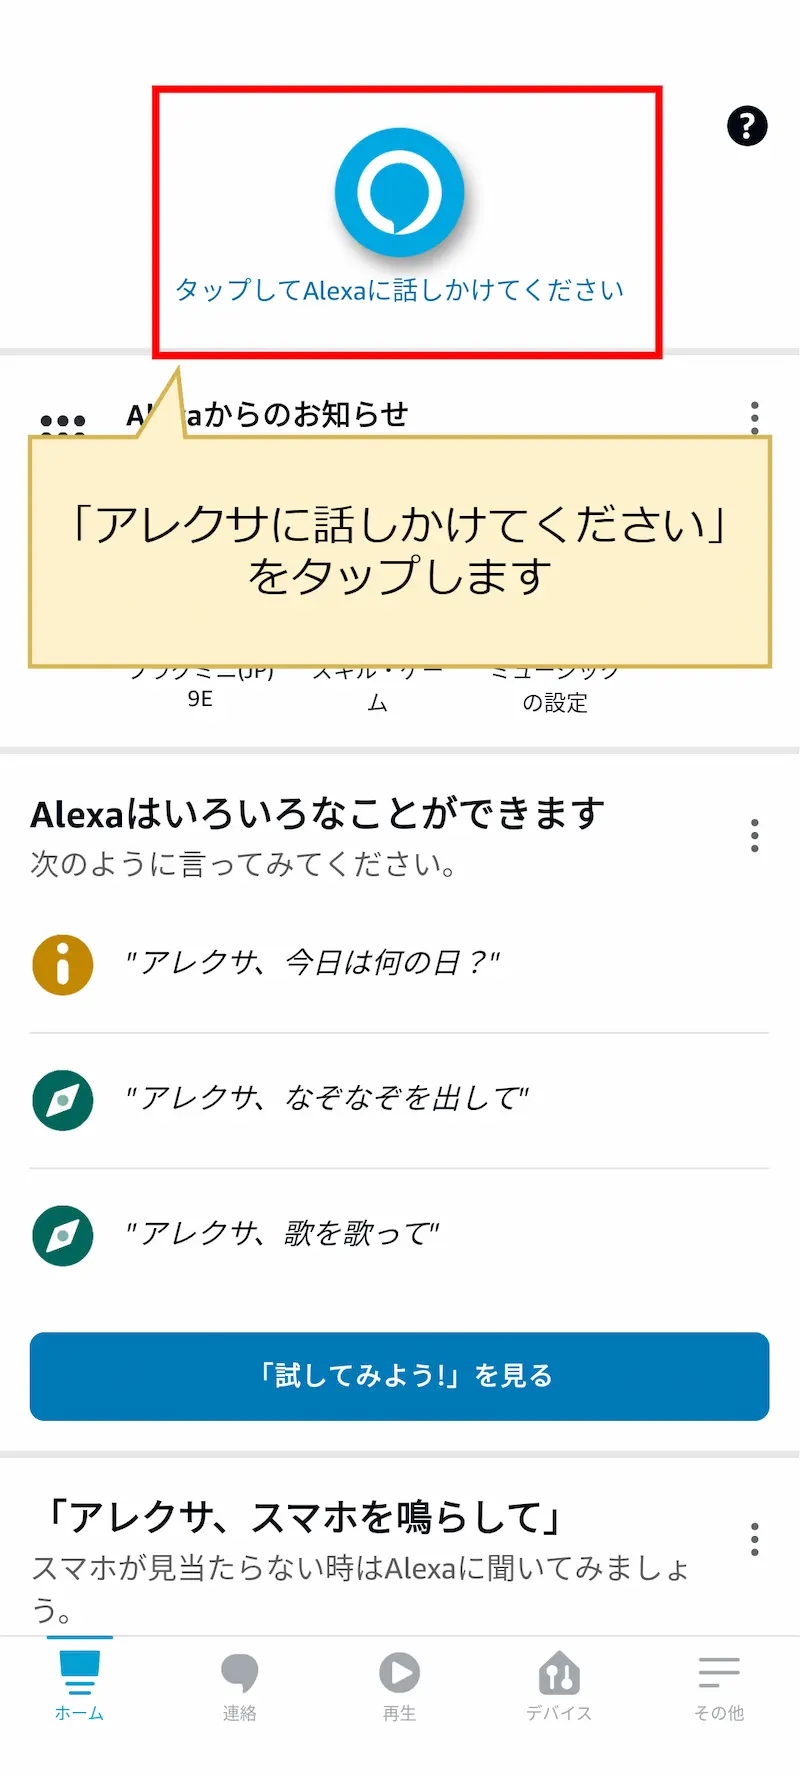 アレクサアプリでアレクサに話しかける方法